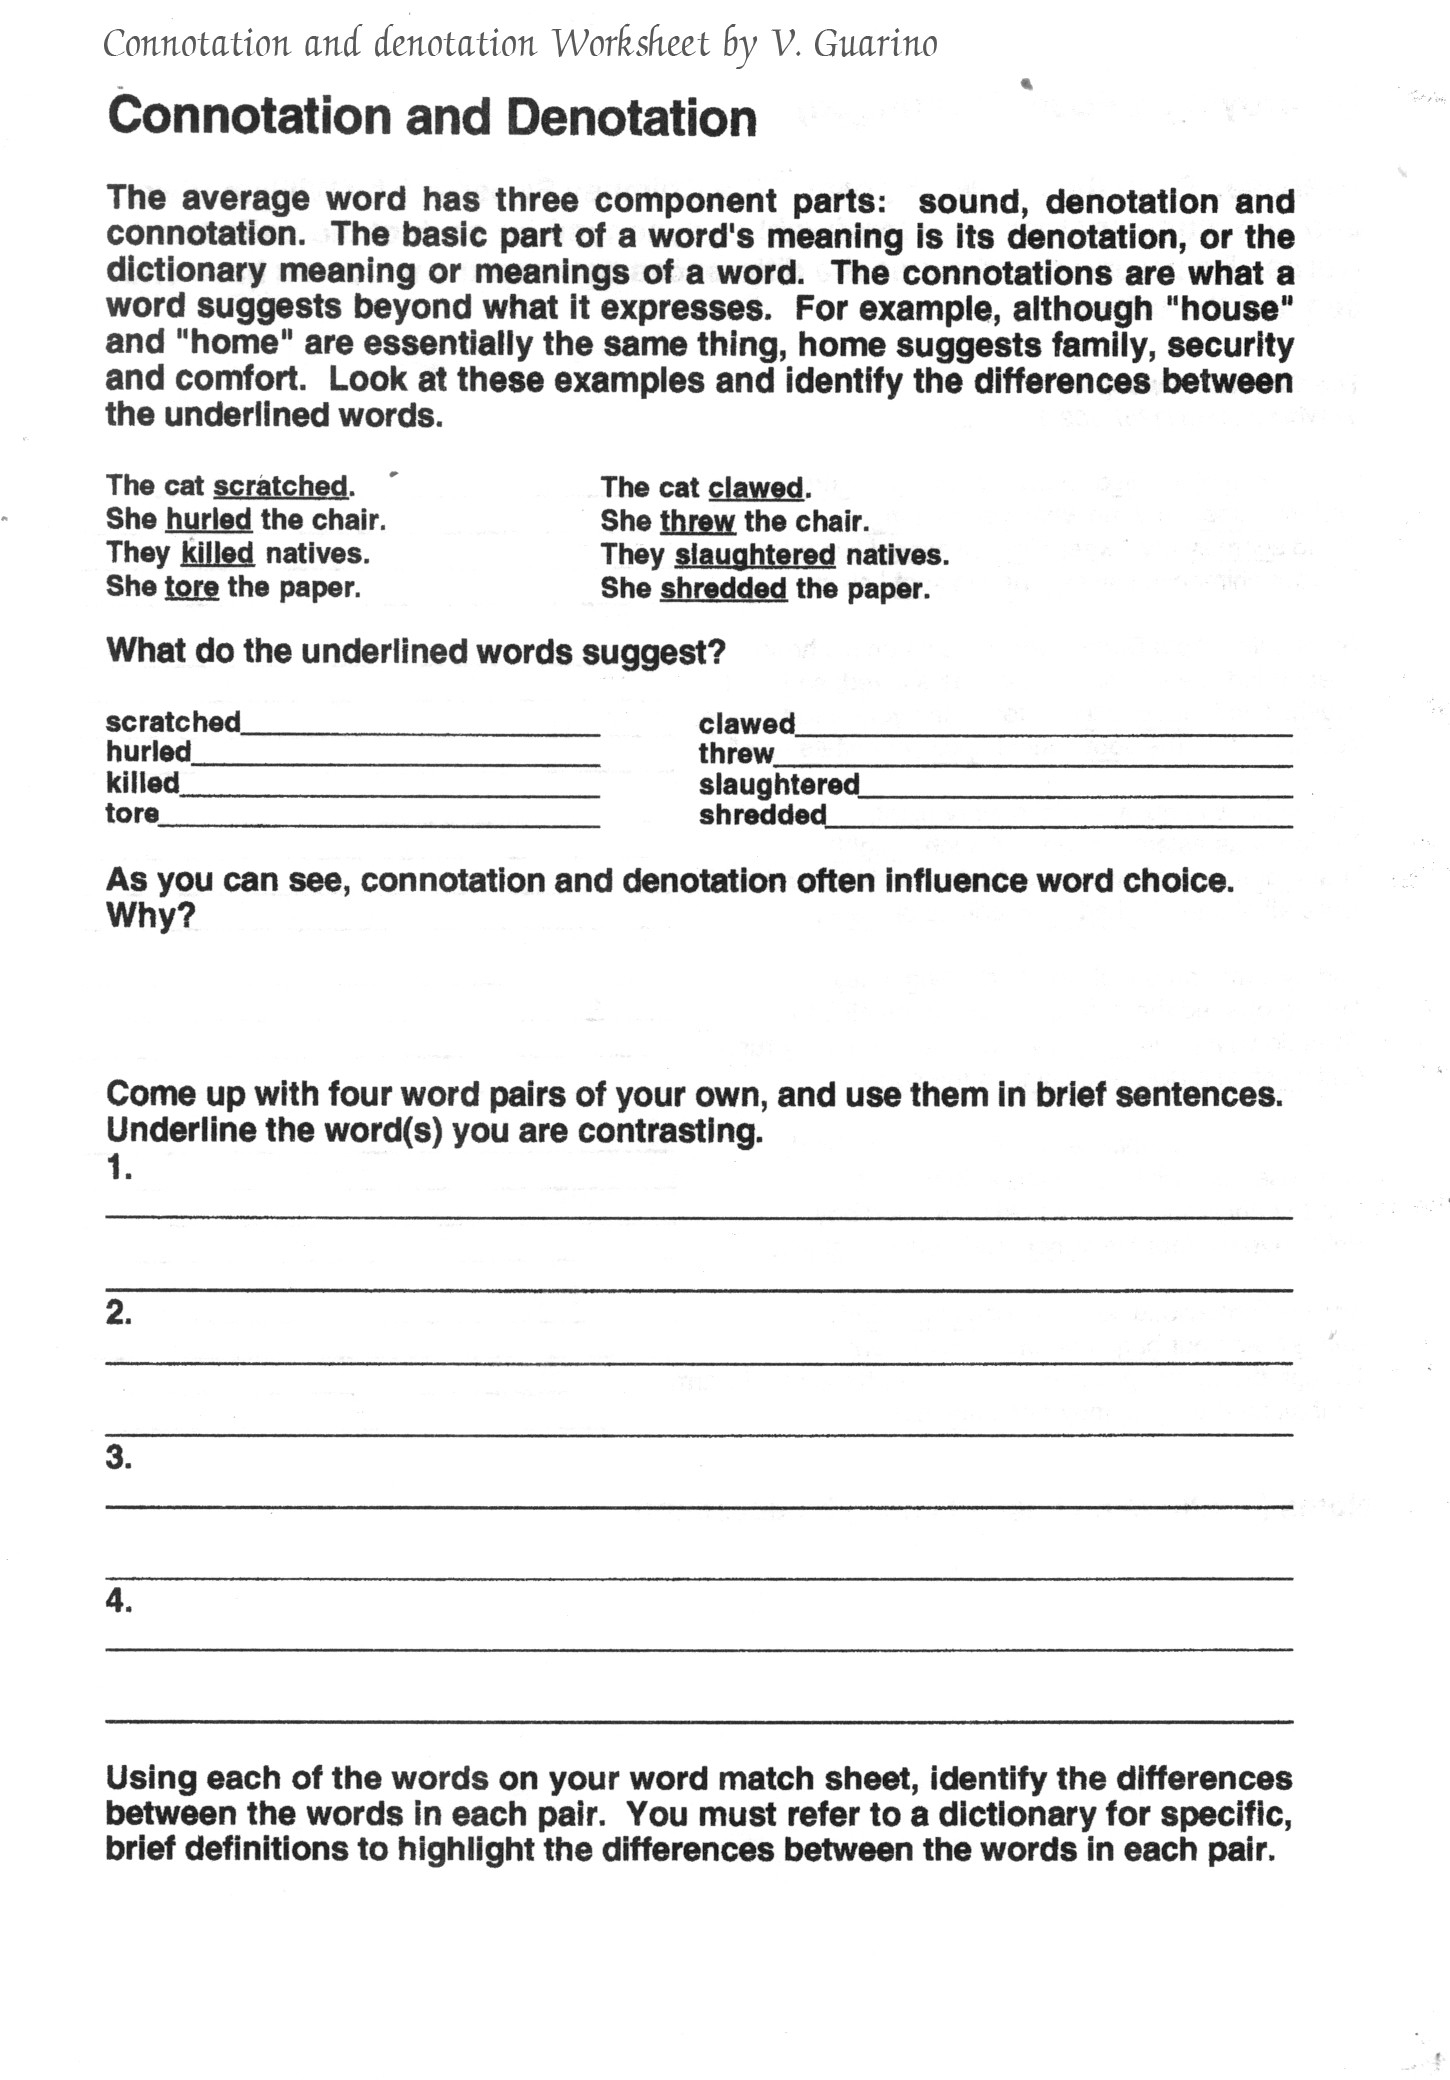 Free Ela Worksheets School Rock Worksheet Esl Save High School - Free Printable Esl Worksheets For High School